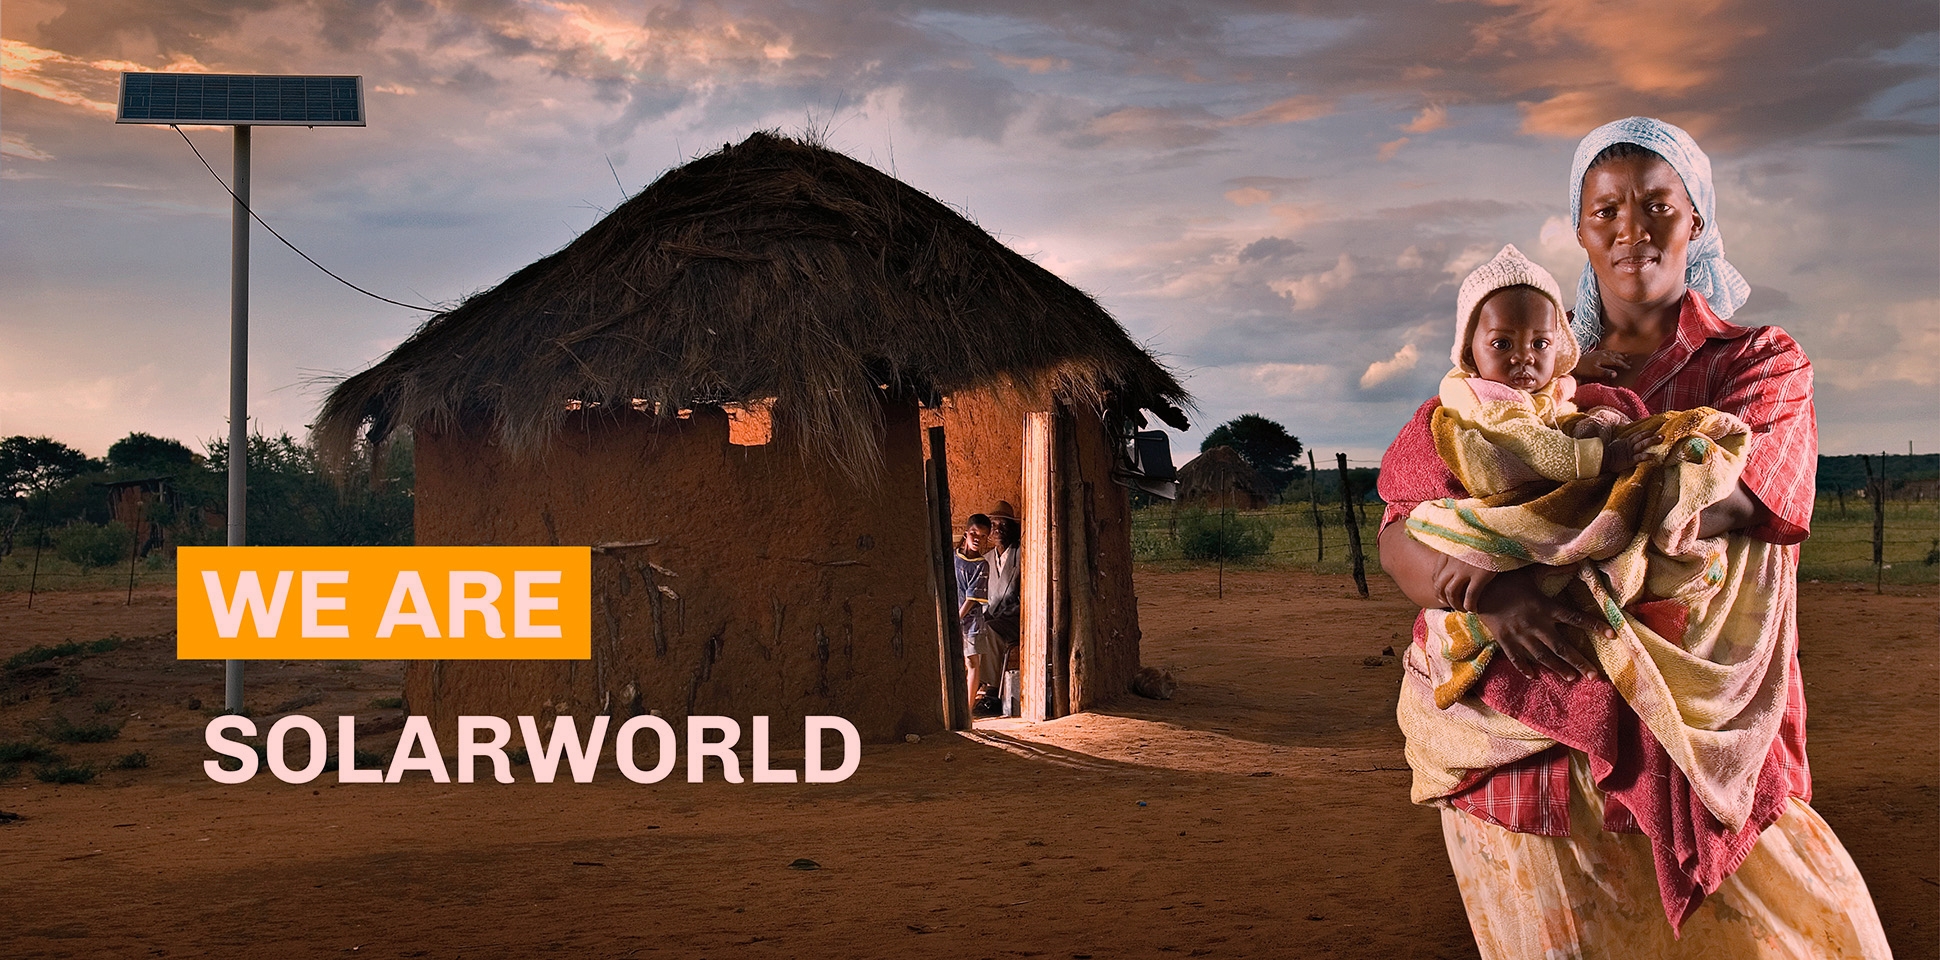 Werbebild mit afrikanischer Frau mit einem Kind auf dem Arm und eine Hütte für die Corporate Identity